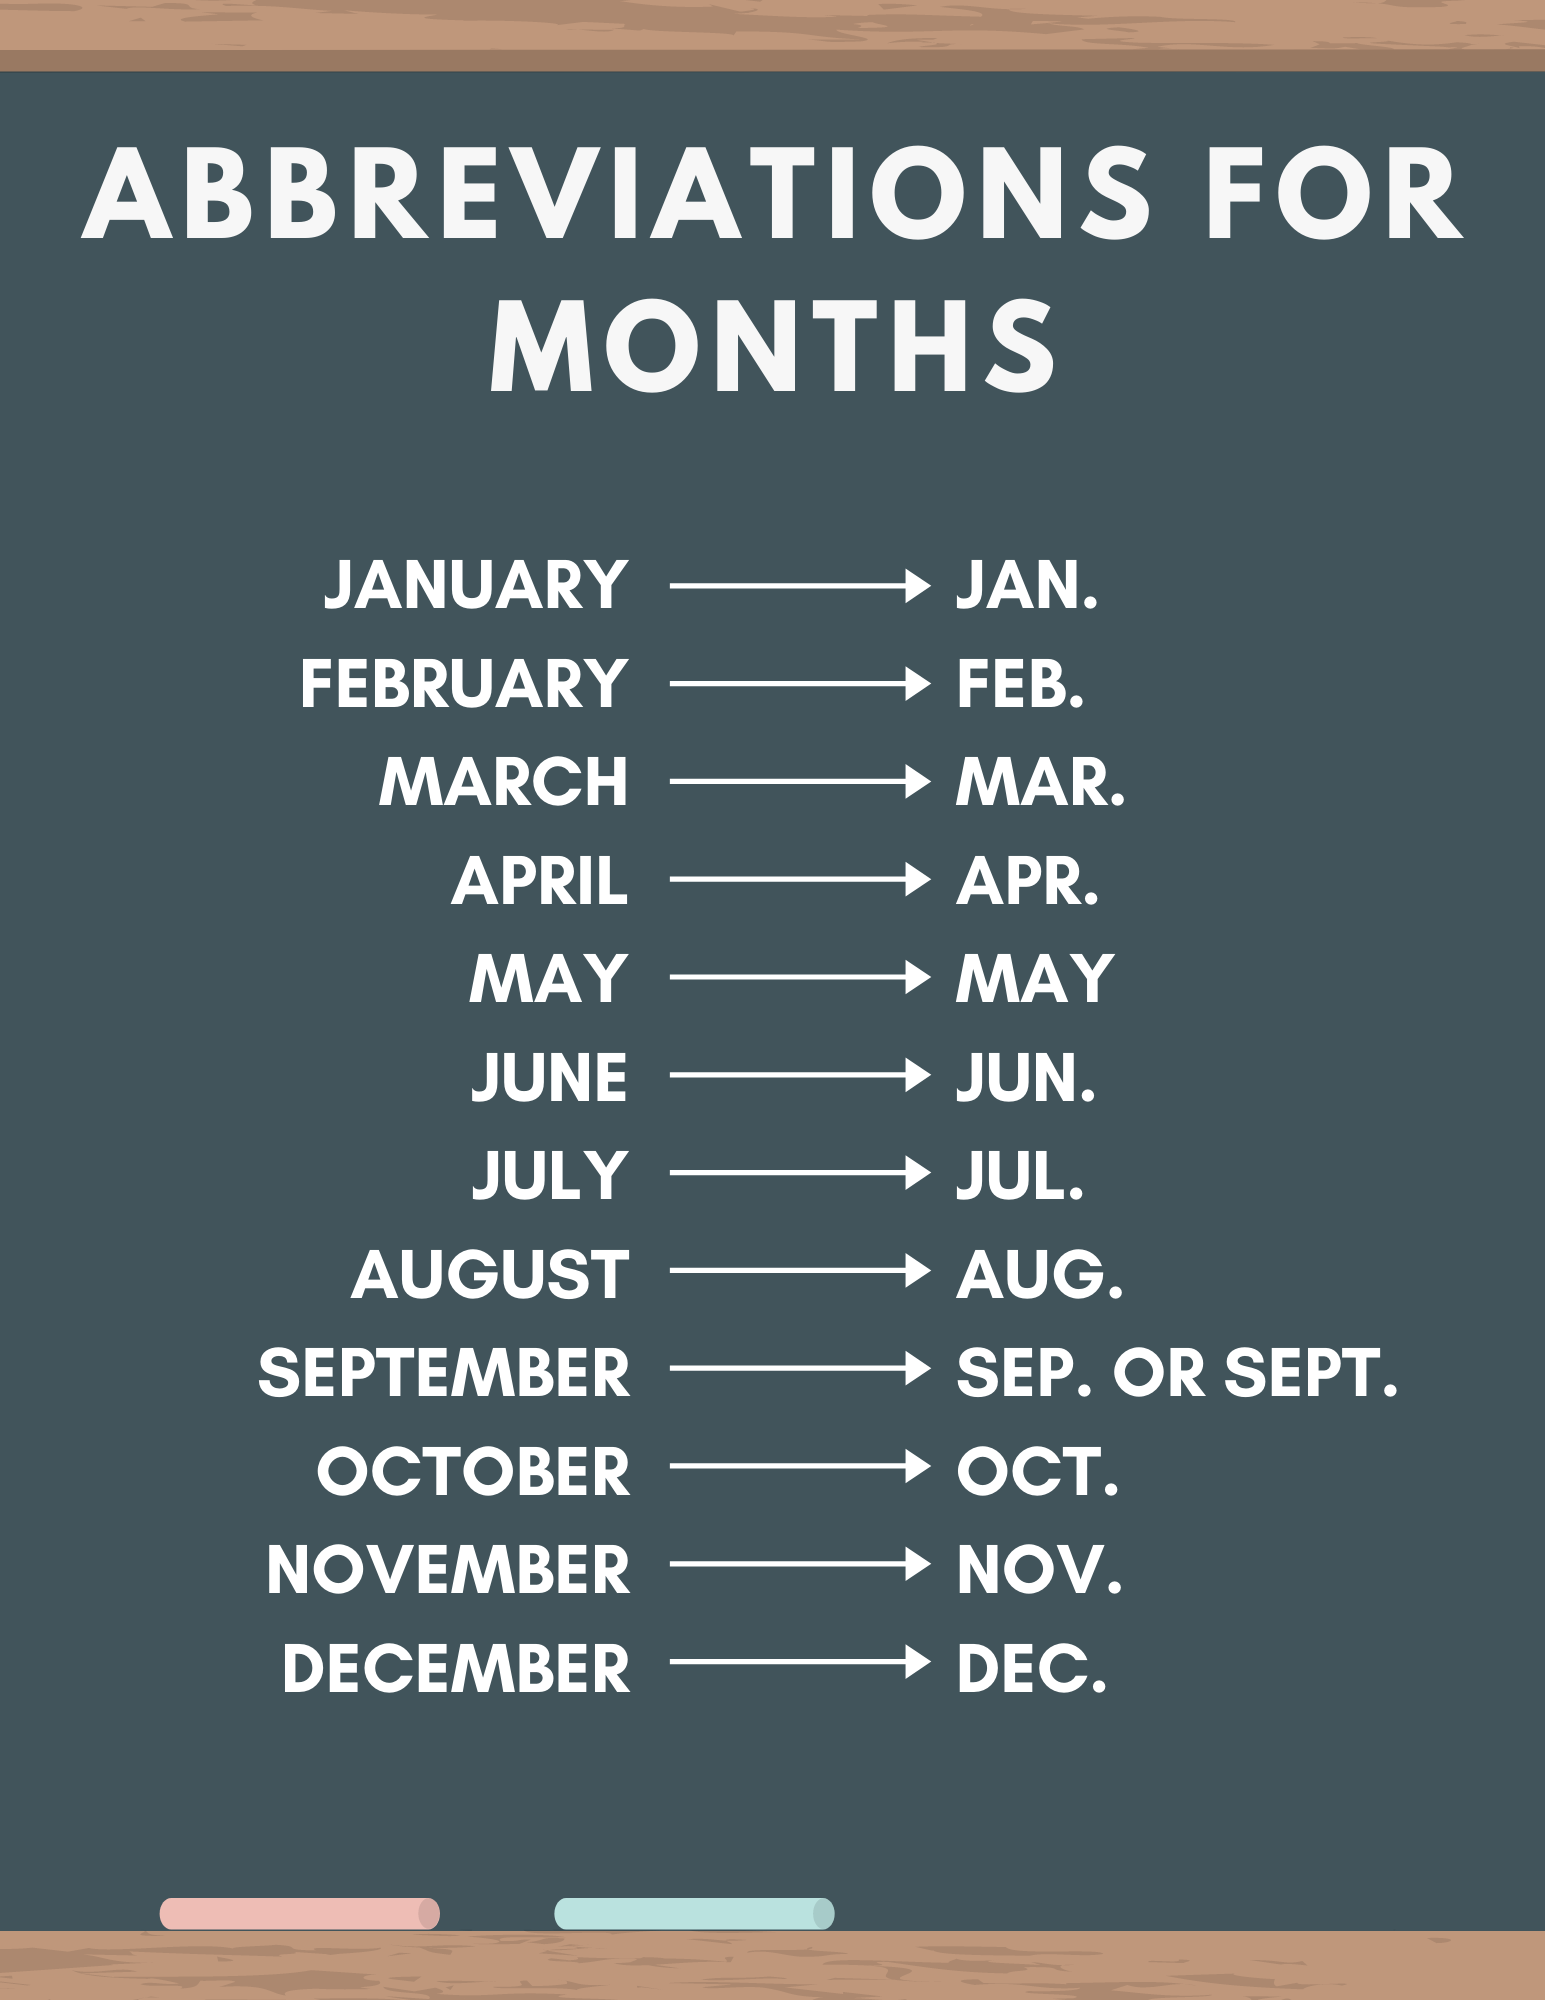 Liste et abréviations pour les mois: liste des mois et abréviations